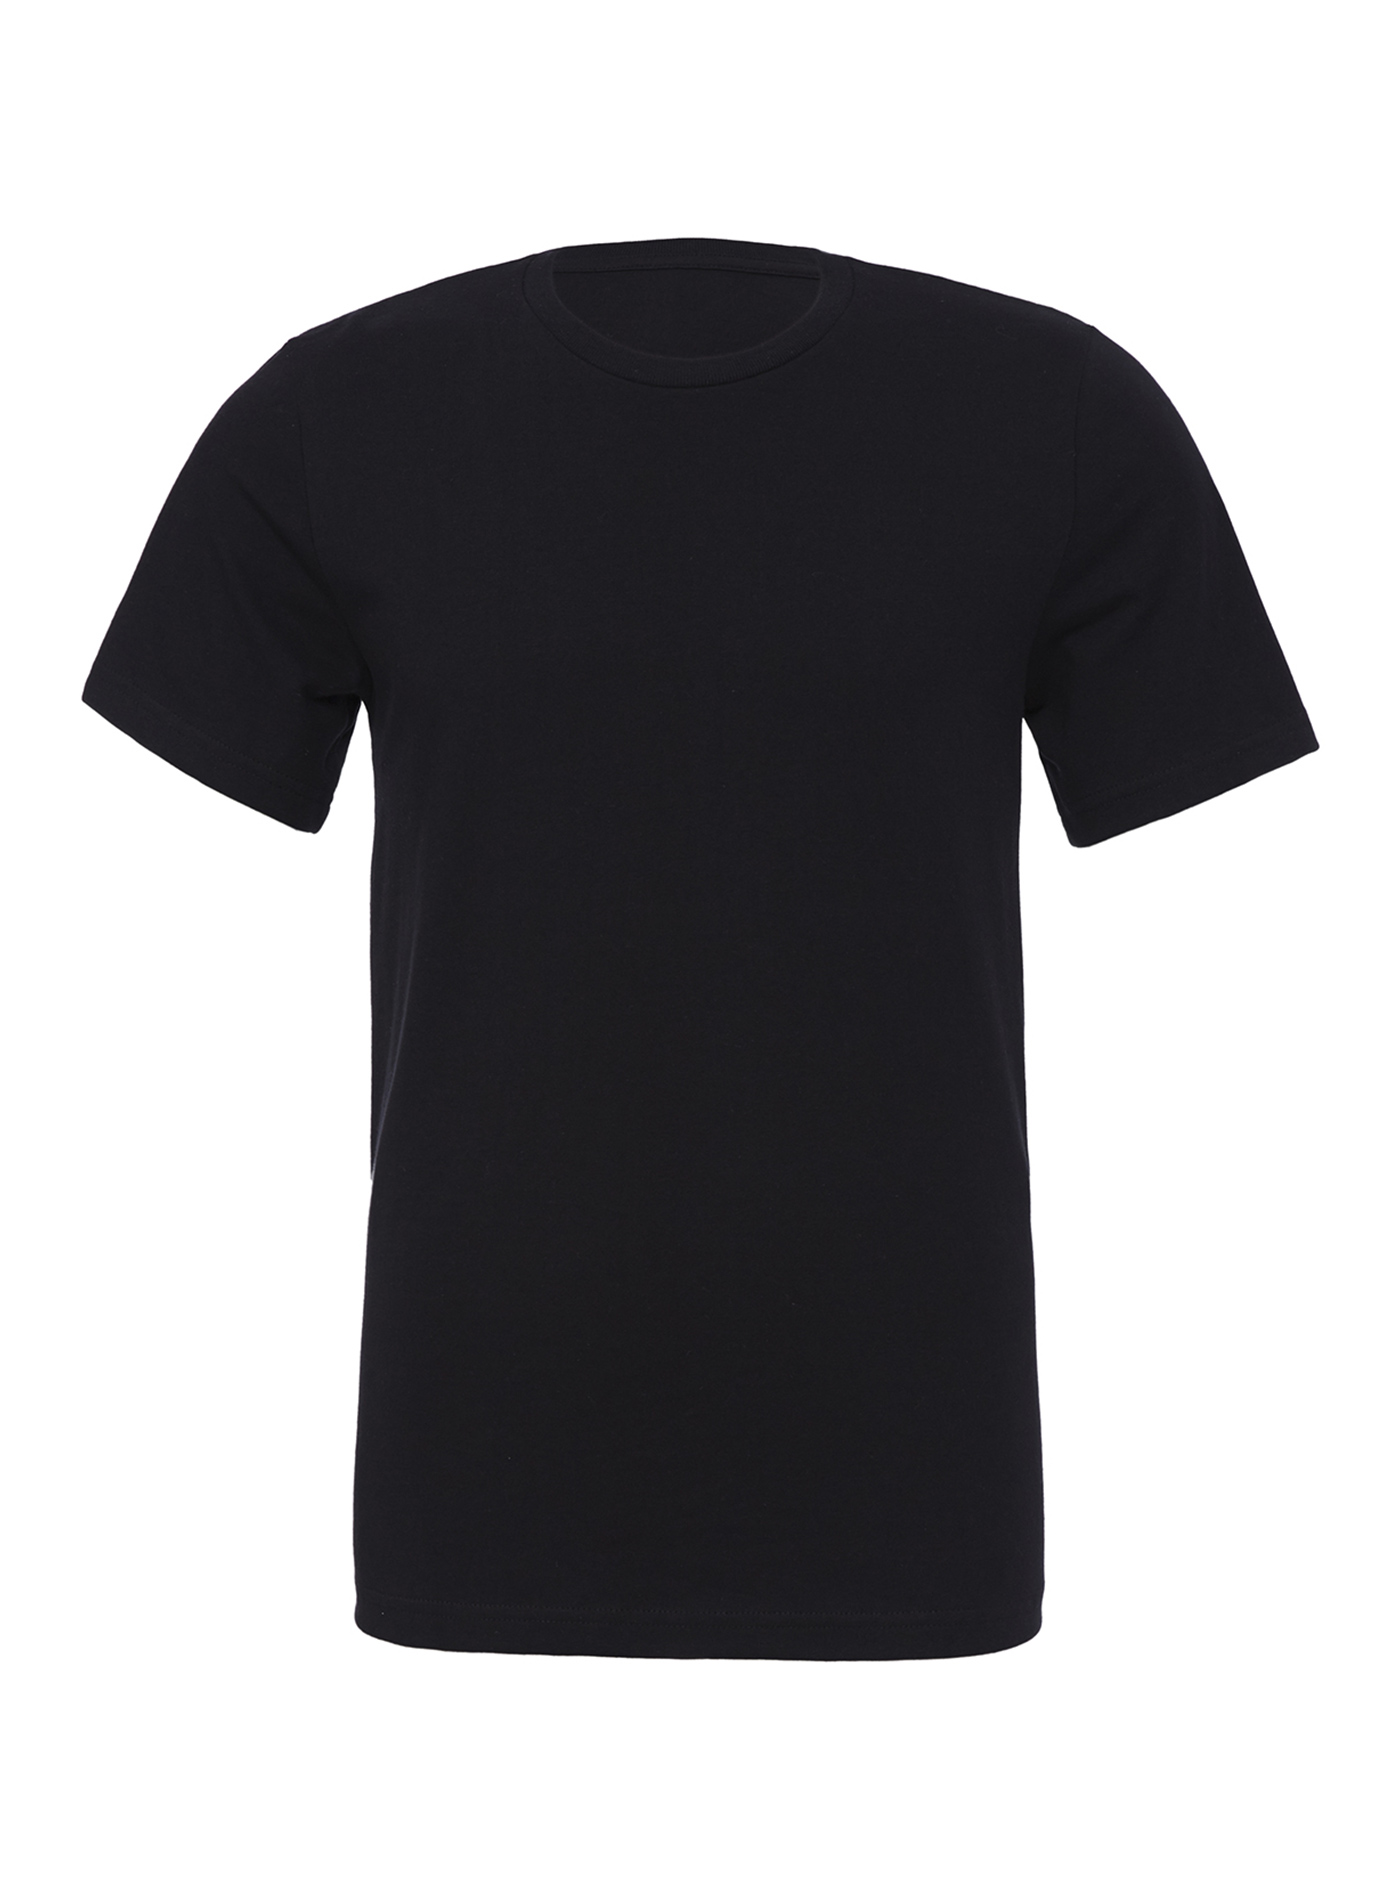 Unisex tričko Bella + Canvas Jersey - černá M